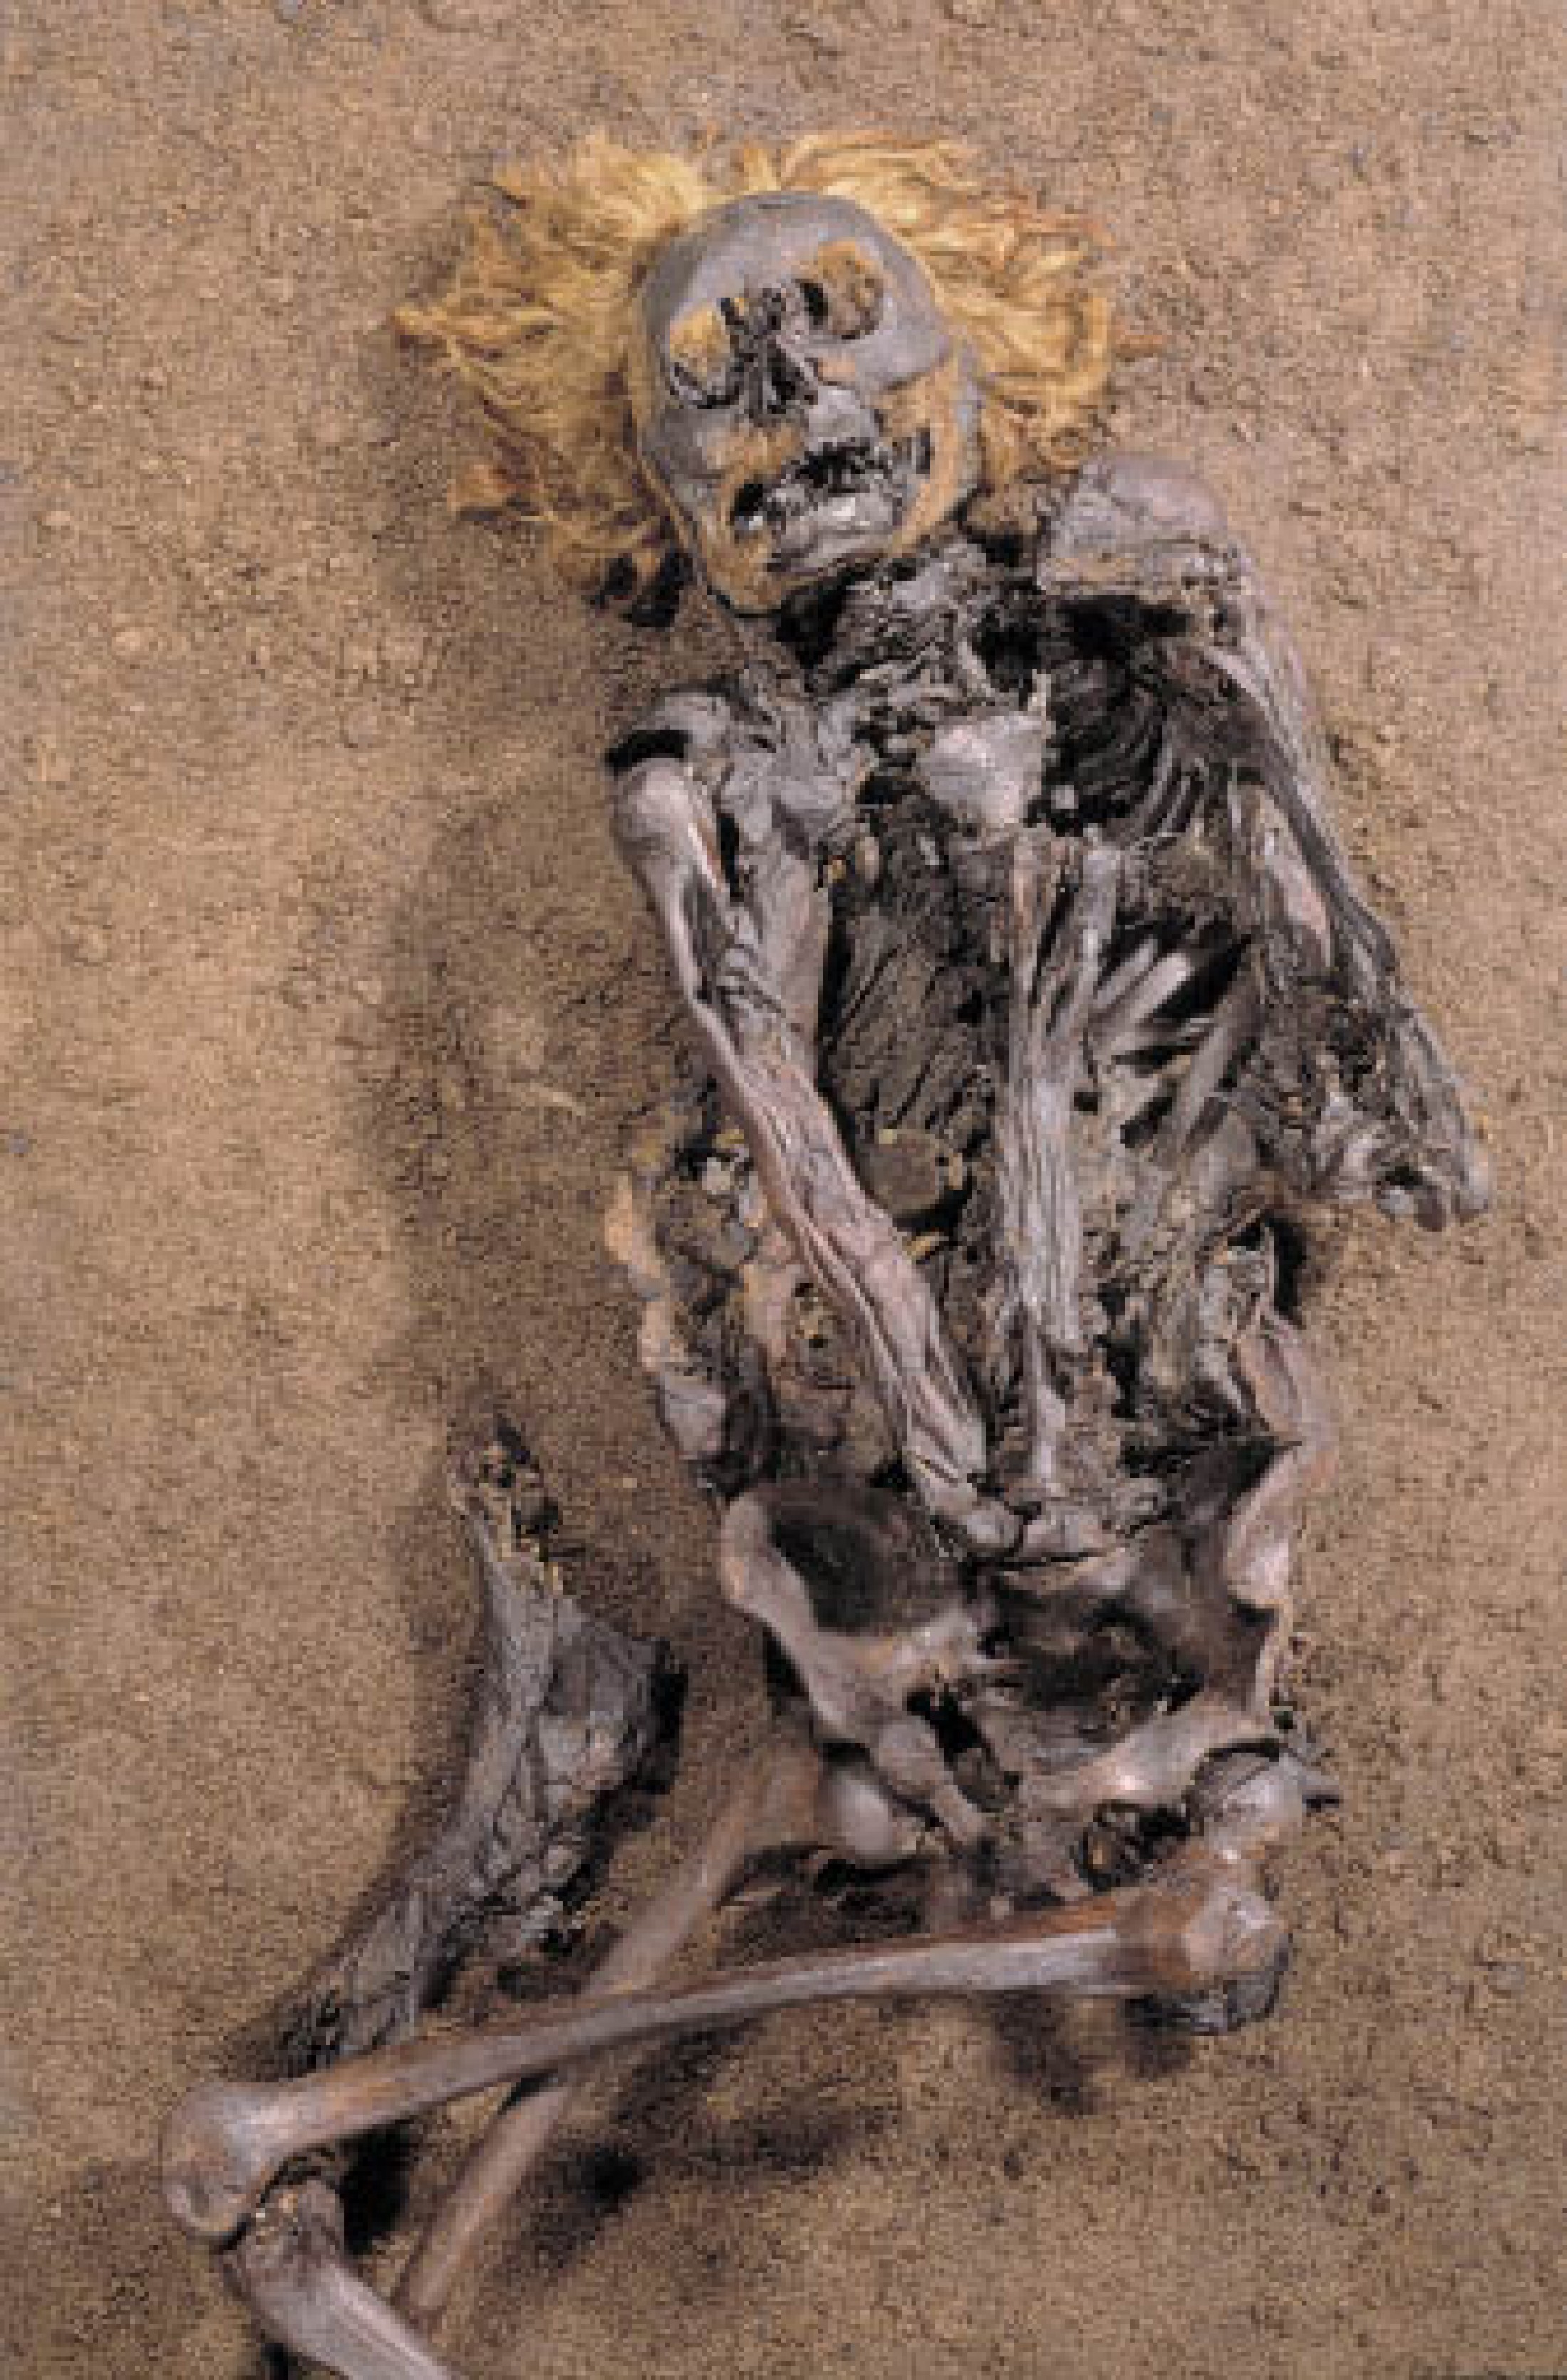 : Der rote Franz: Immer wieder werden in den nordeuropäischen Mooren mumifizierte Körper prähistorischer Menschen entdeckt. Viele dieser Leichen weisen schwere Verletzungen auf. Der „rote Franz“ starb an einer Schnittverletzung im Halsbereich. Die Radiokarbon-Datierung ergab, dass er aus dem 3. oder 4. Jahrhundert n. Chr. stammt. Sein ursprünglich blondes Haar wurde erst durch das Moorwasser rot gefärbt. Nach seiner Entdeckung wurde der Körper zunächst, wie der „Mann im Salz“, am Friedhof bestattet. Heute befindet er sich im Niedersächsischen Landesmuseum in Hannover. (Bild: Niedersächsiches Landesmuseum Hannover)